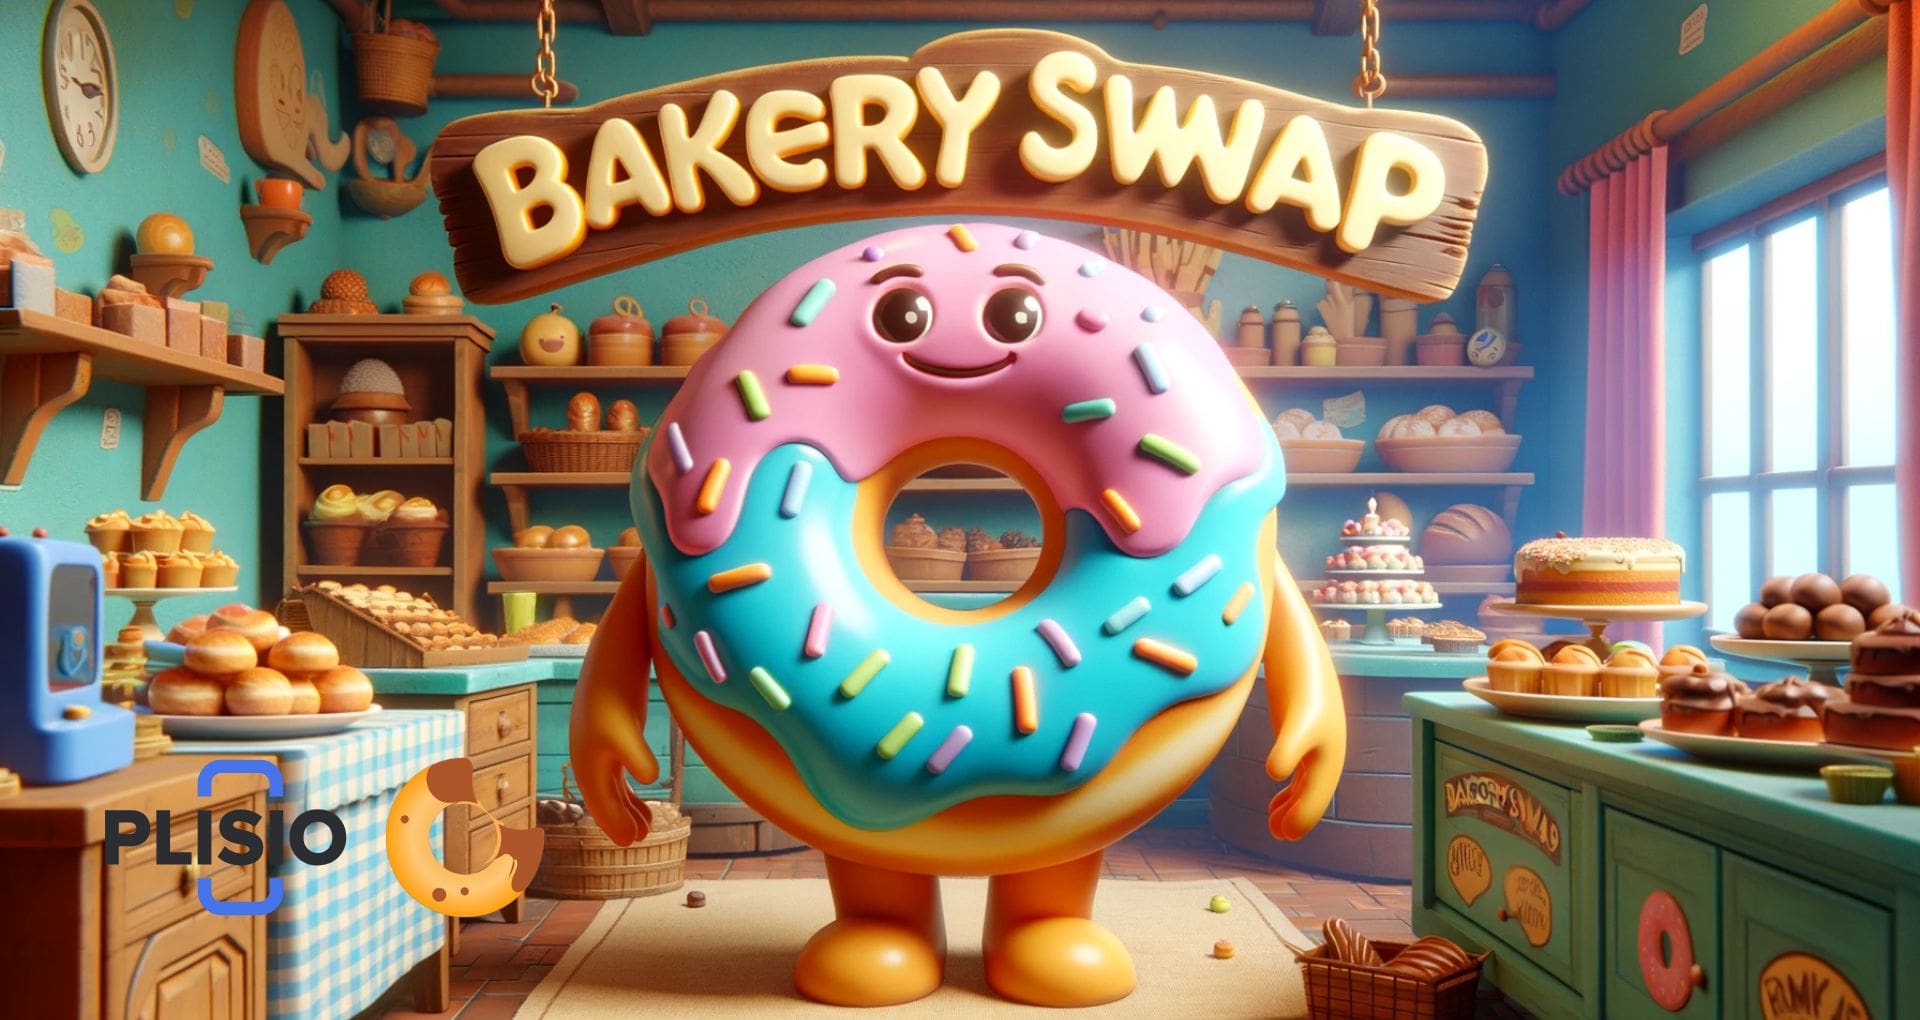 BakerySwap (BAKE): DeFi AMM NFT Marketplace